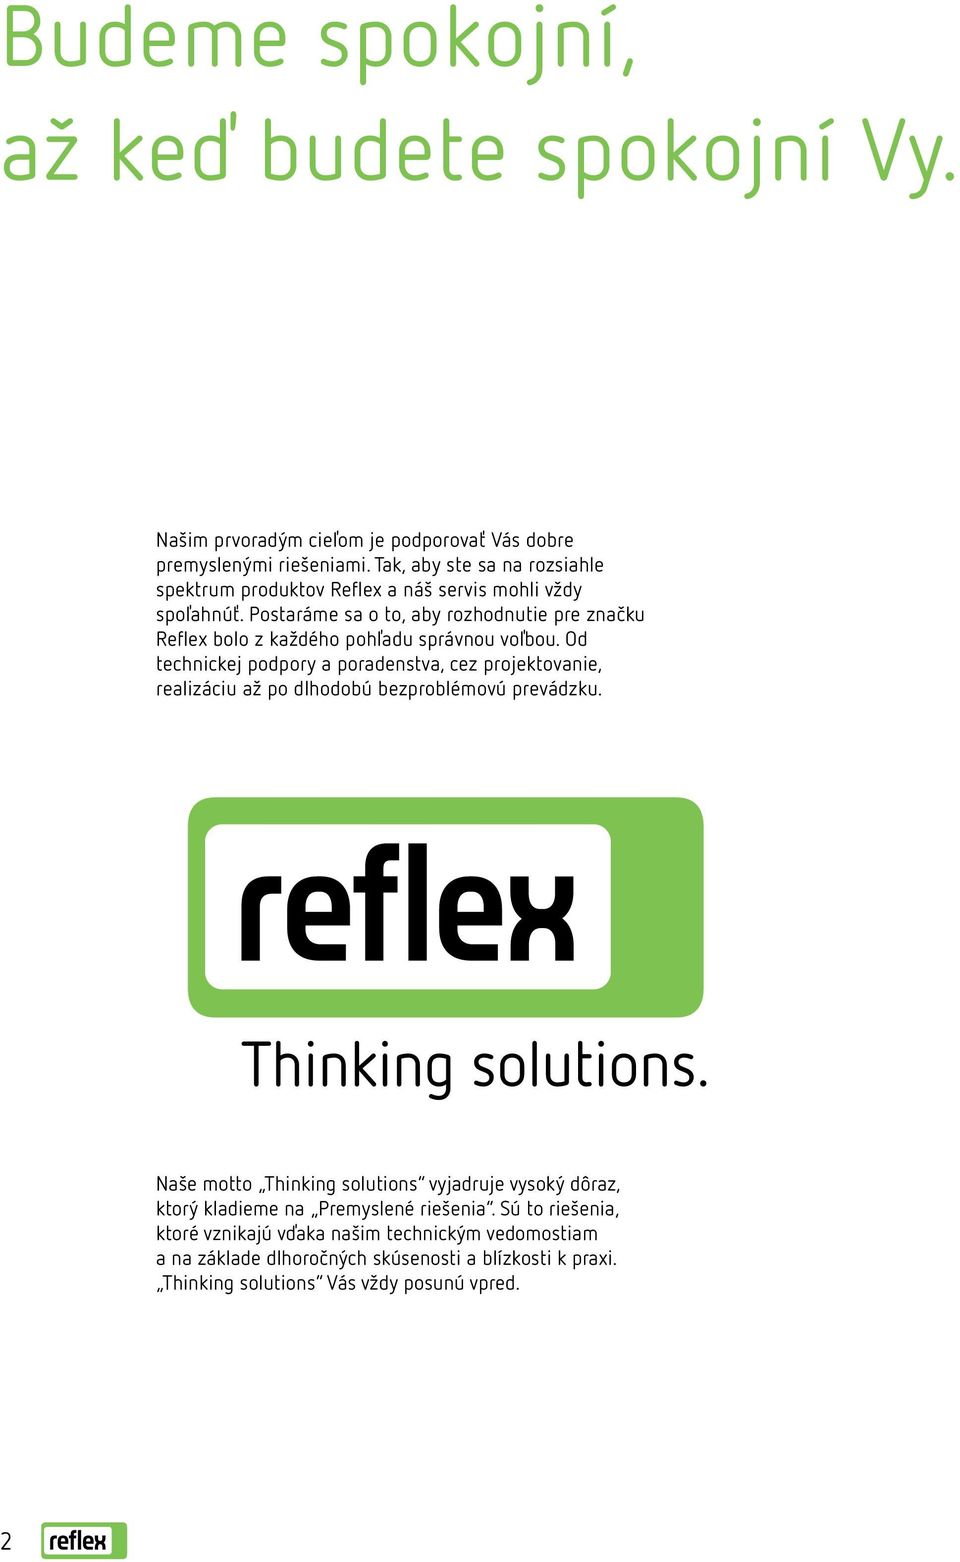 Postaráme sa o to, aby rozhodnutie pre značku Reflex bolo z každého pohľadu správnou voľbou.